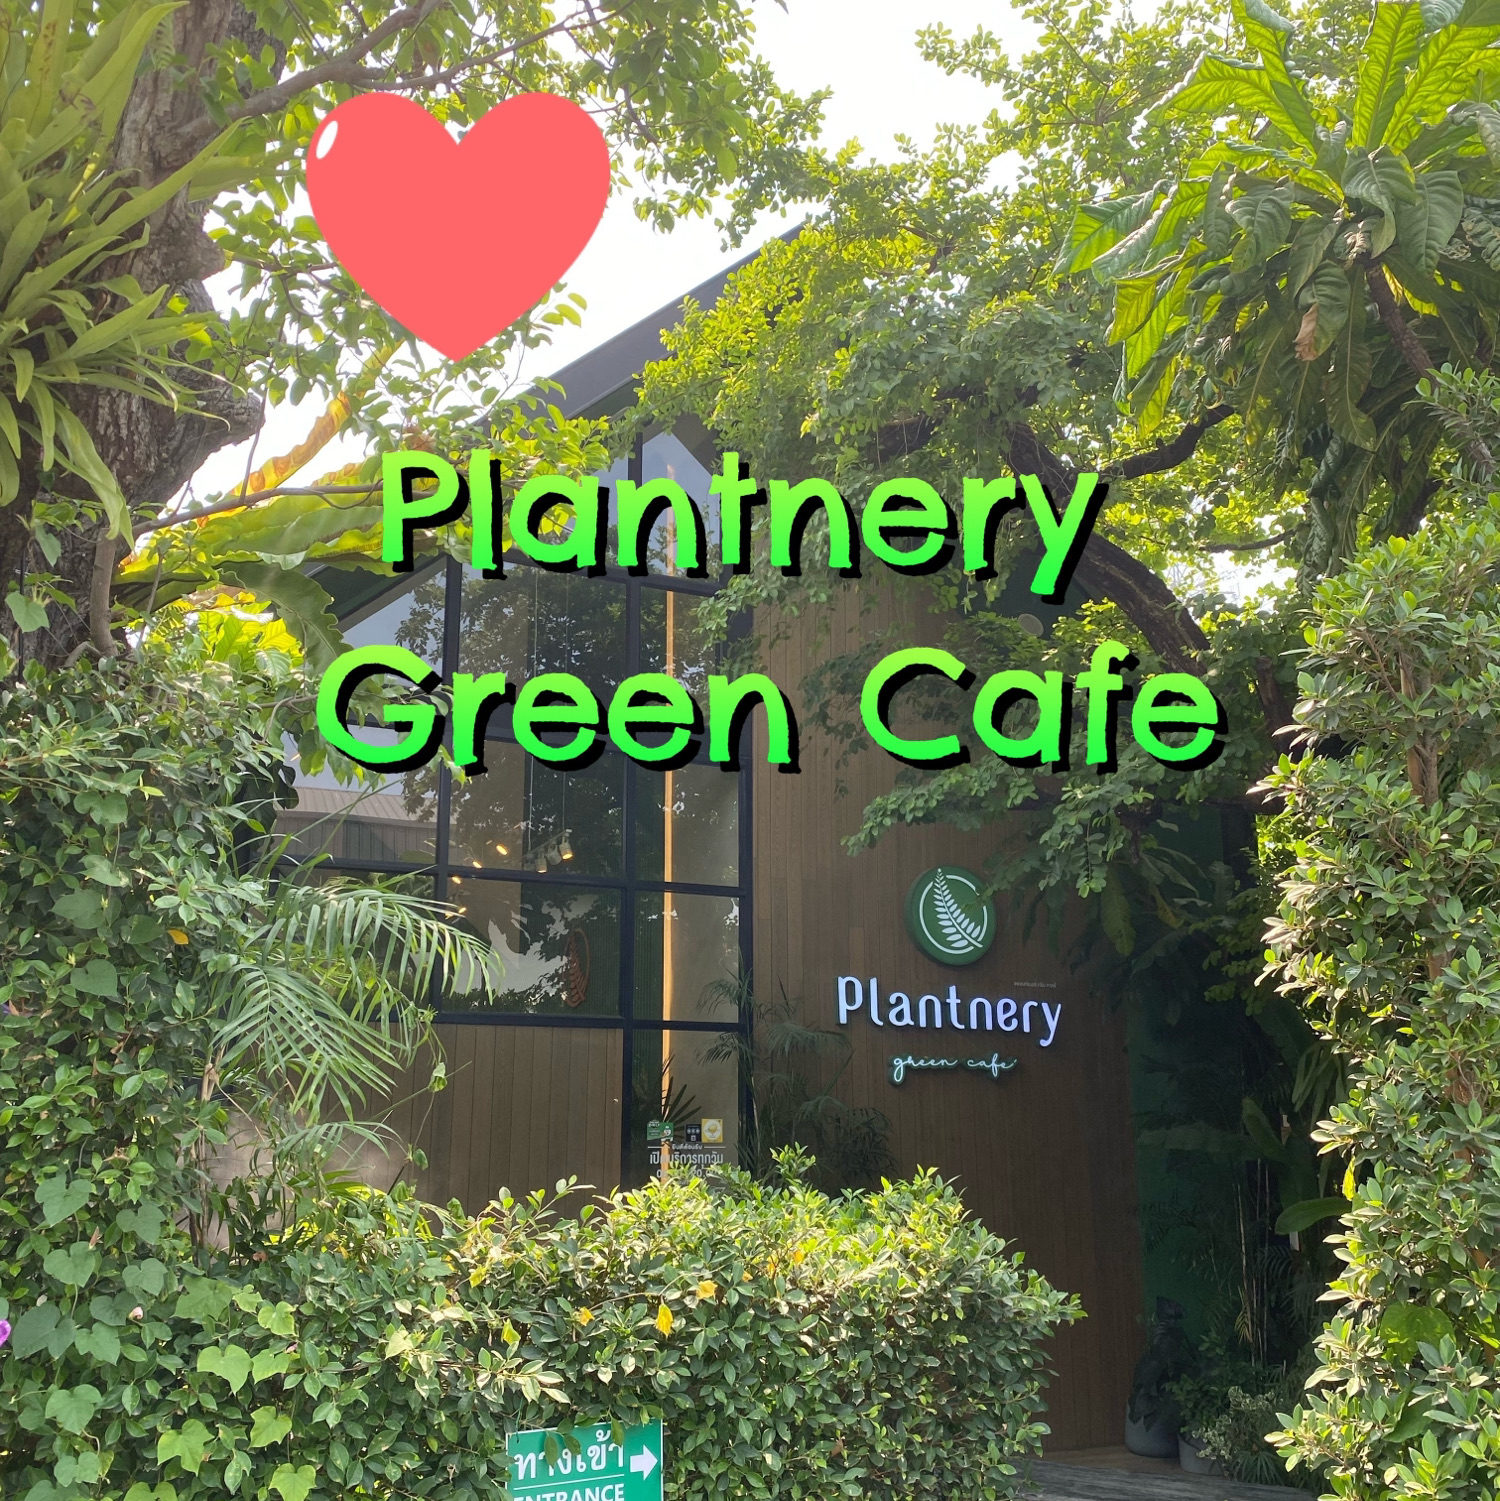 绿咖啡厅,气氛很好,植物园绿咖啡厅🍃